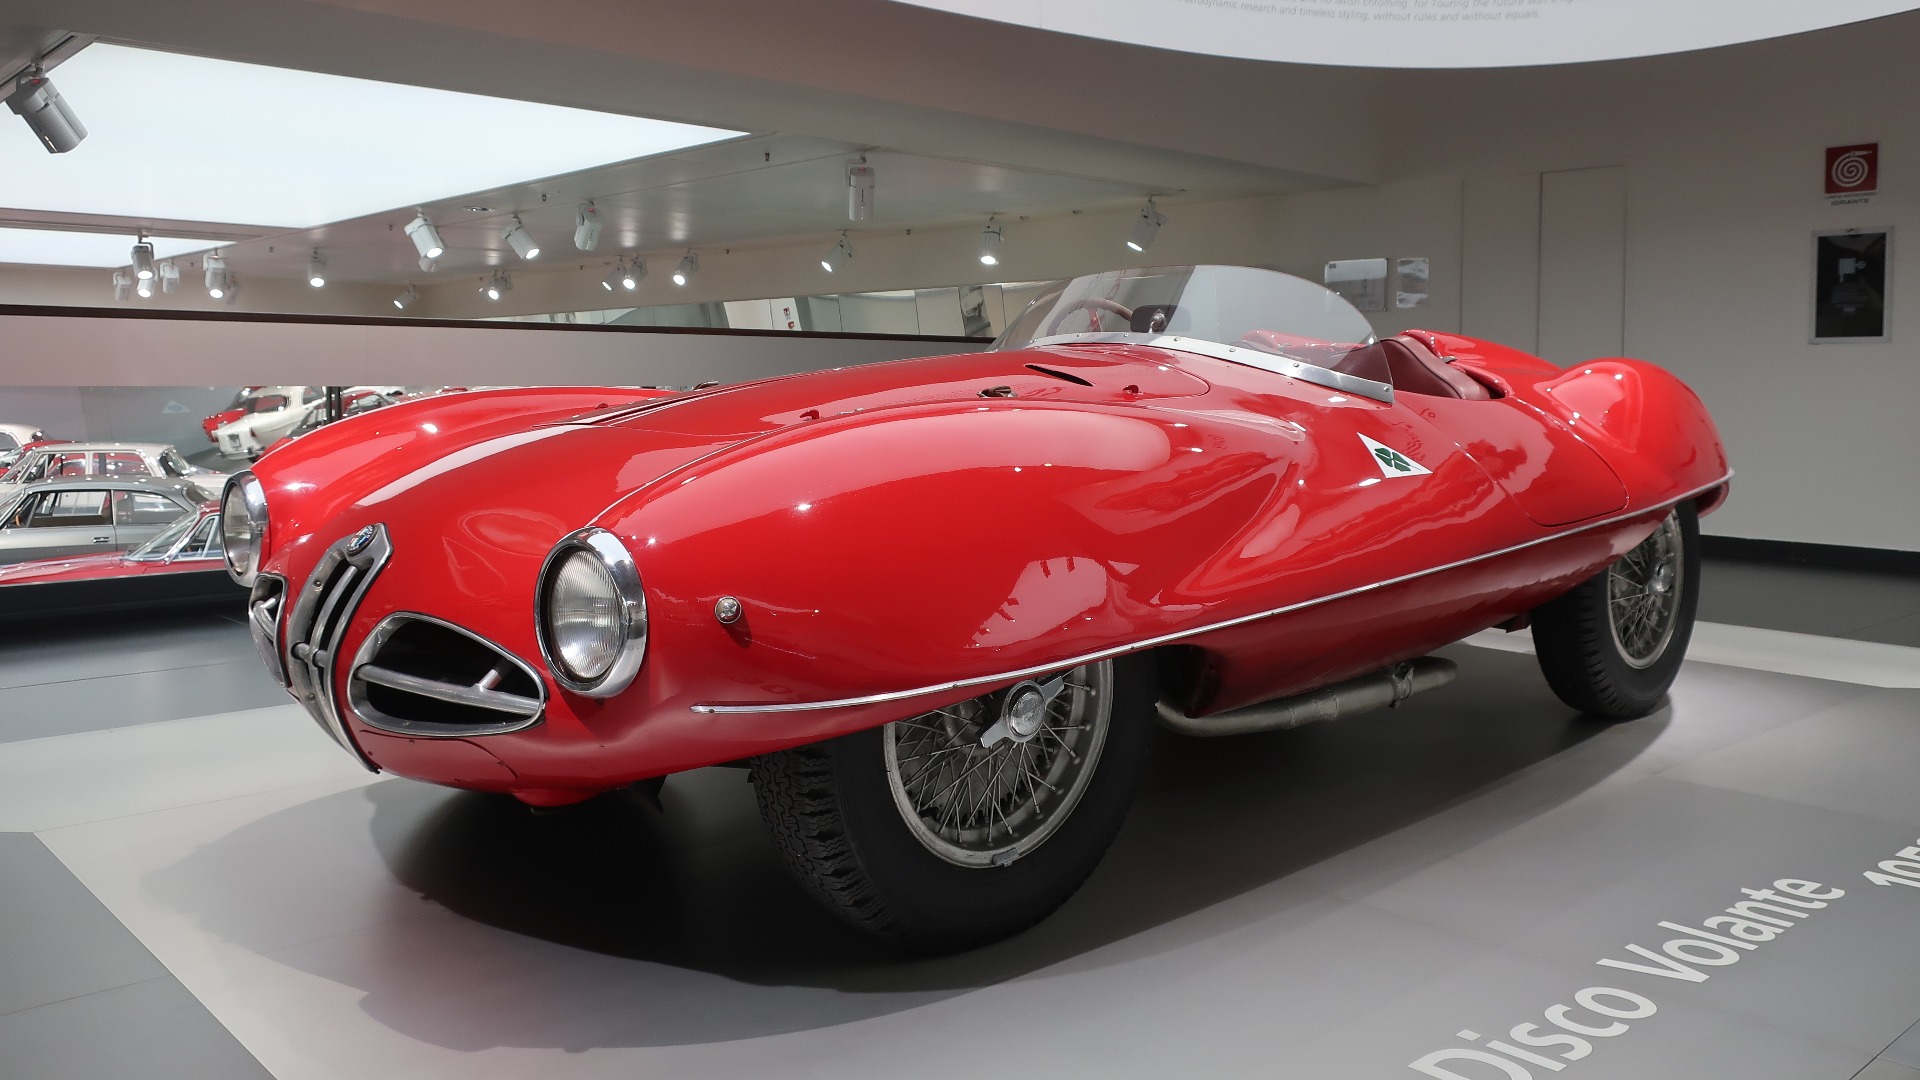 Disco Volante betyr flygende tallerken på italiensk, og det var nok det mange tenkte da de så den utrolige 1900 C52 Disco Volante i 1952.